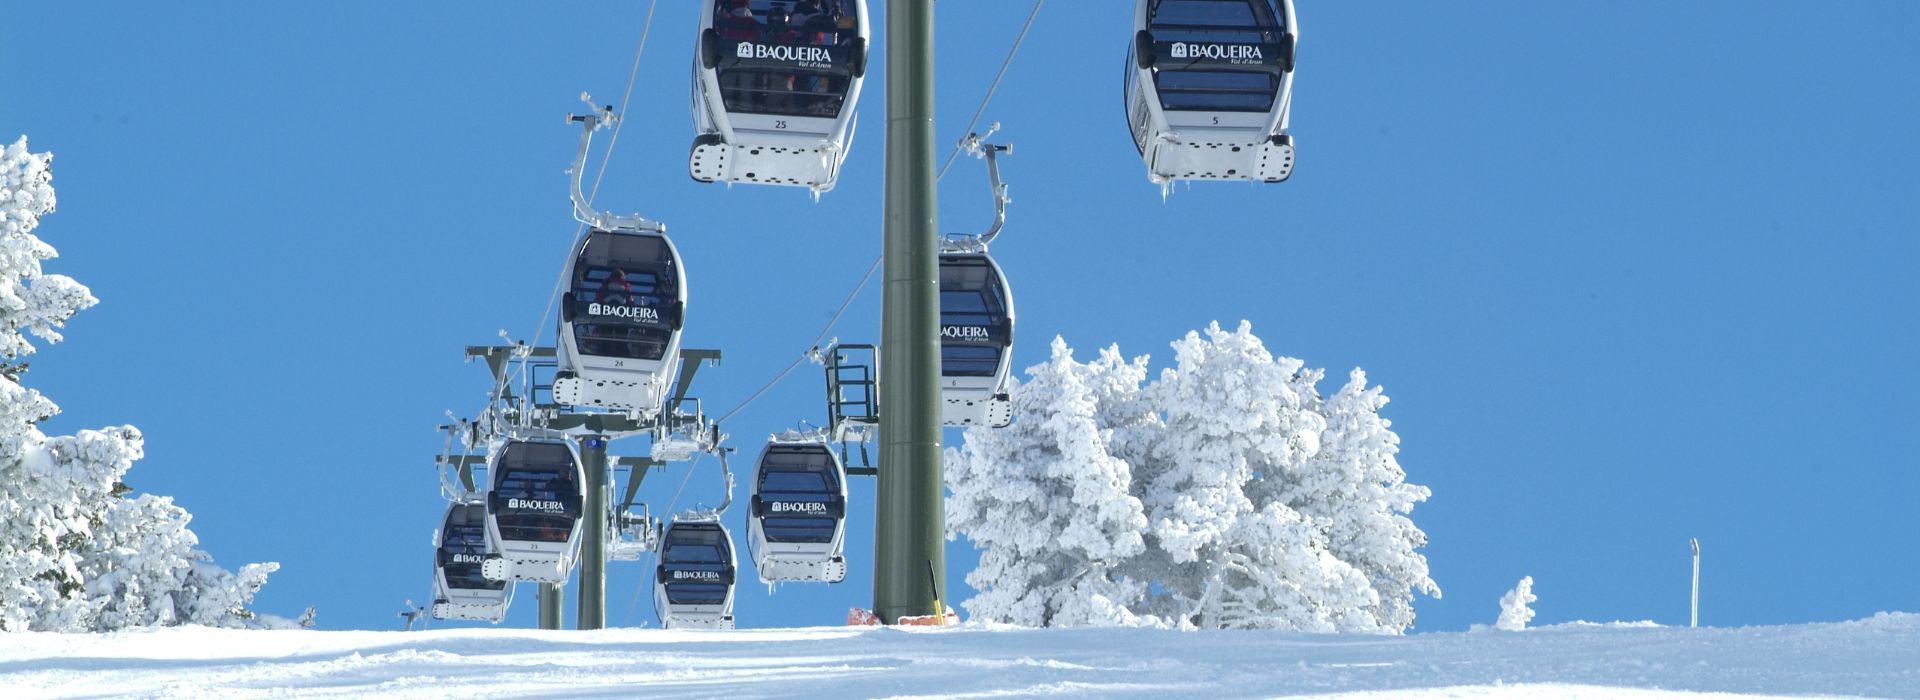 Oferta de esquí en Baqueira - ALOJAMIENTO + FORFAIT